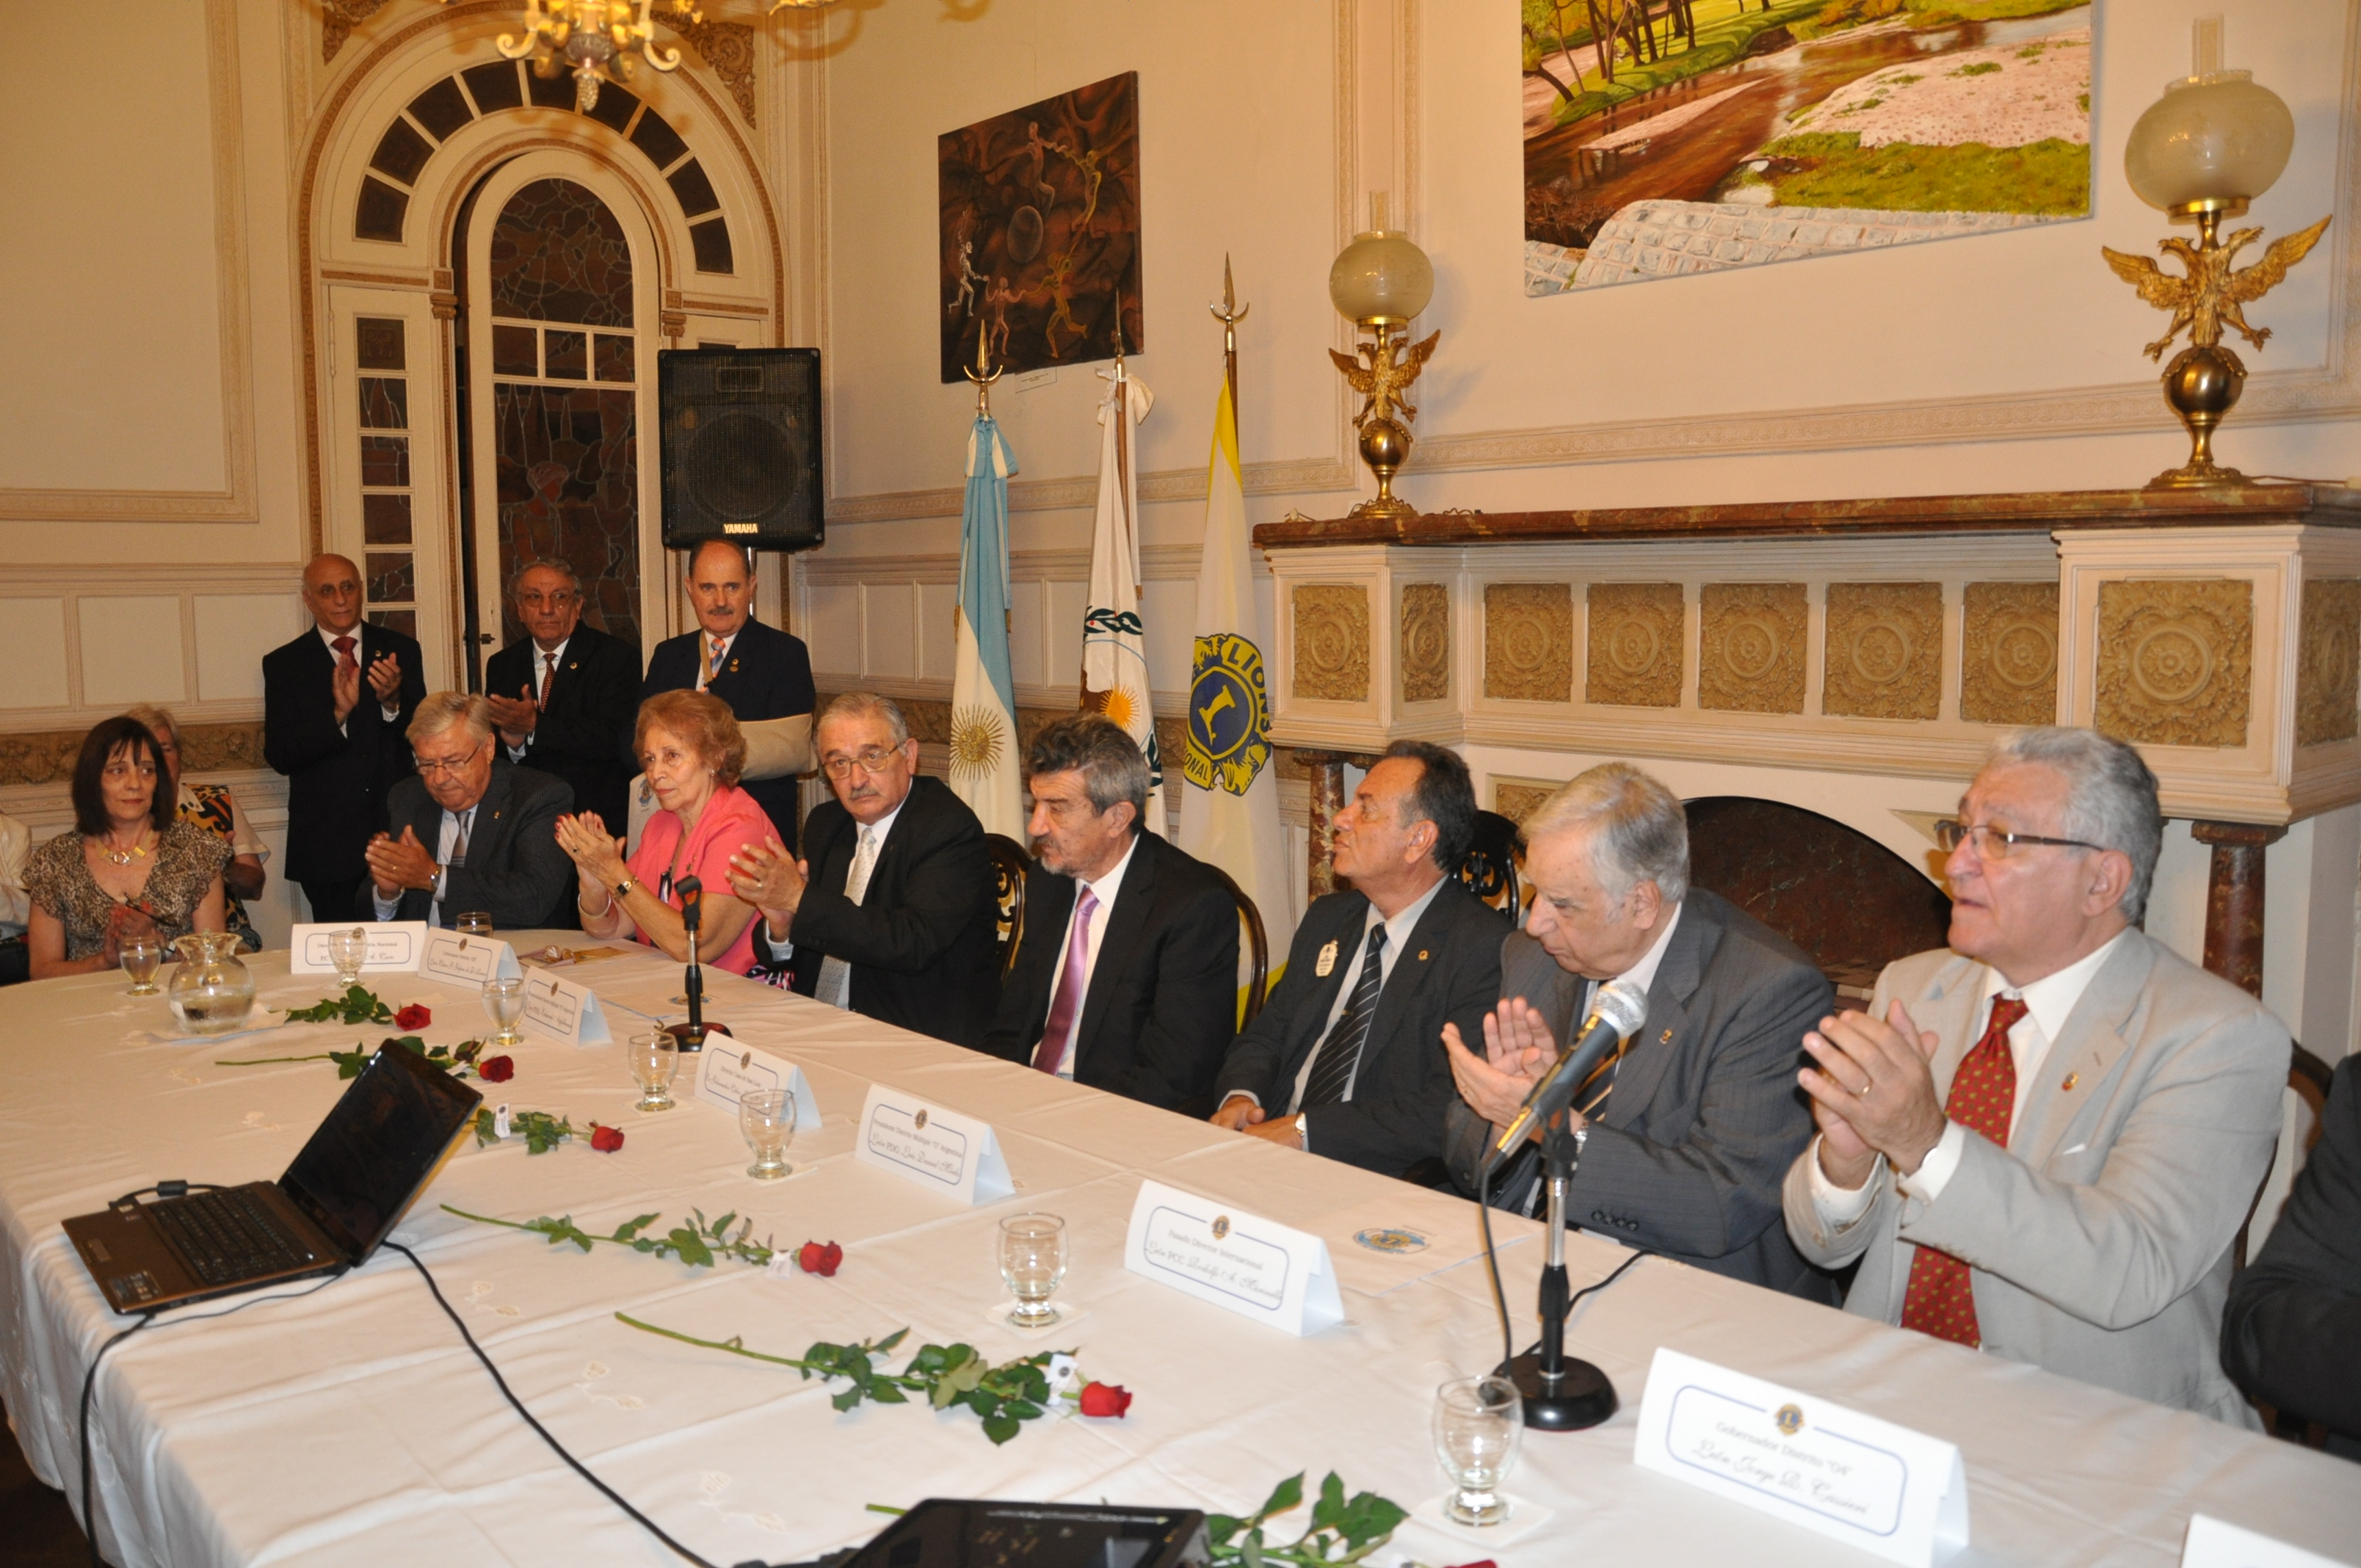 La Casa de San Luis en Buenos Aires fue el escenario elegido para el lanzamiento de la 57ª Convención Nacional del Leonismo Argentino.